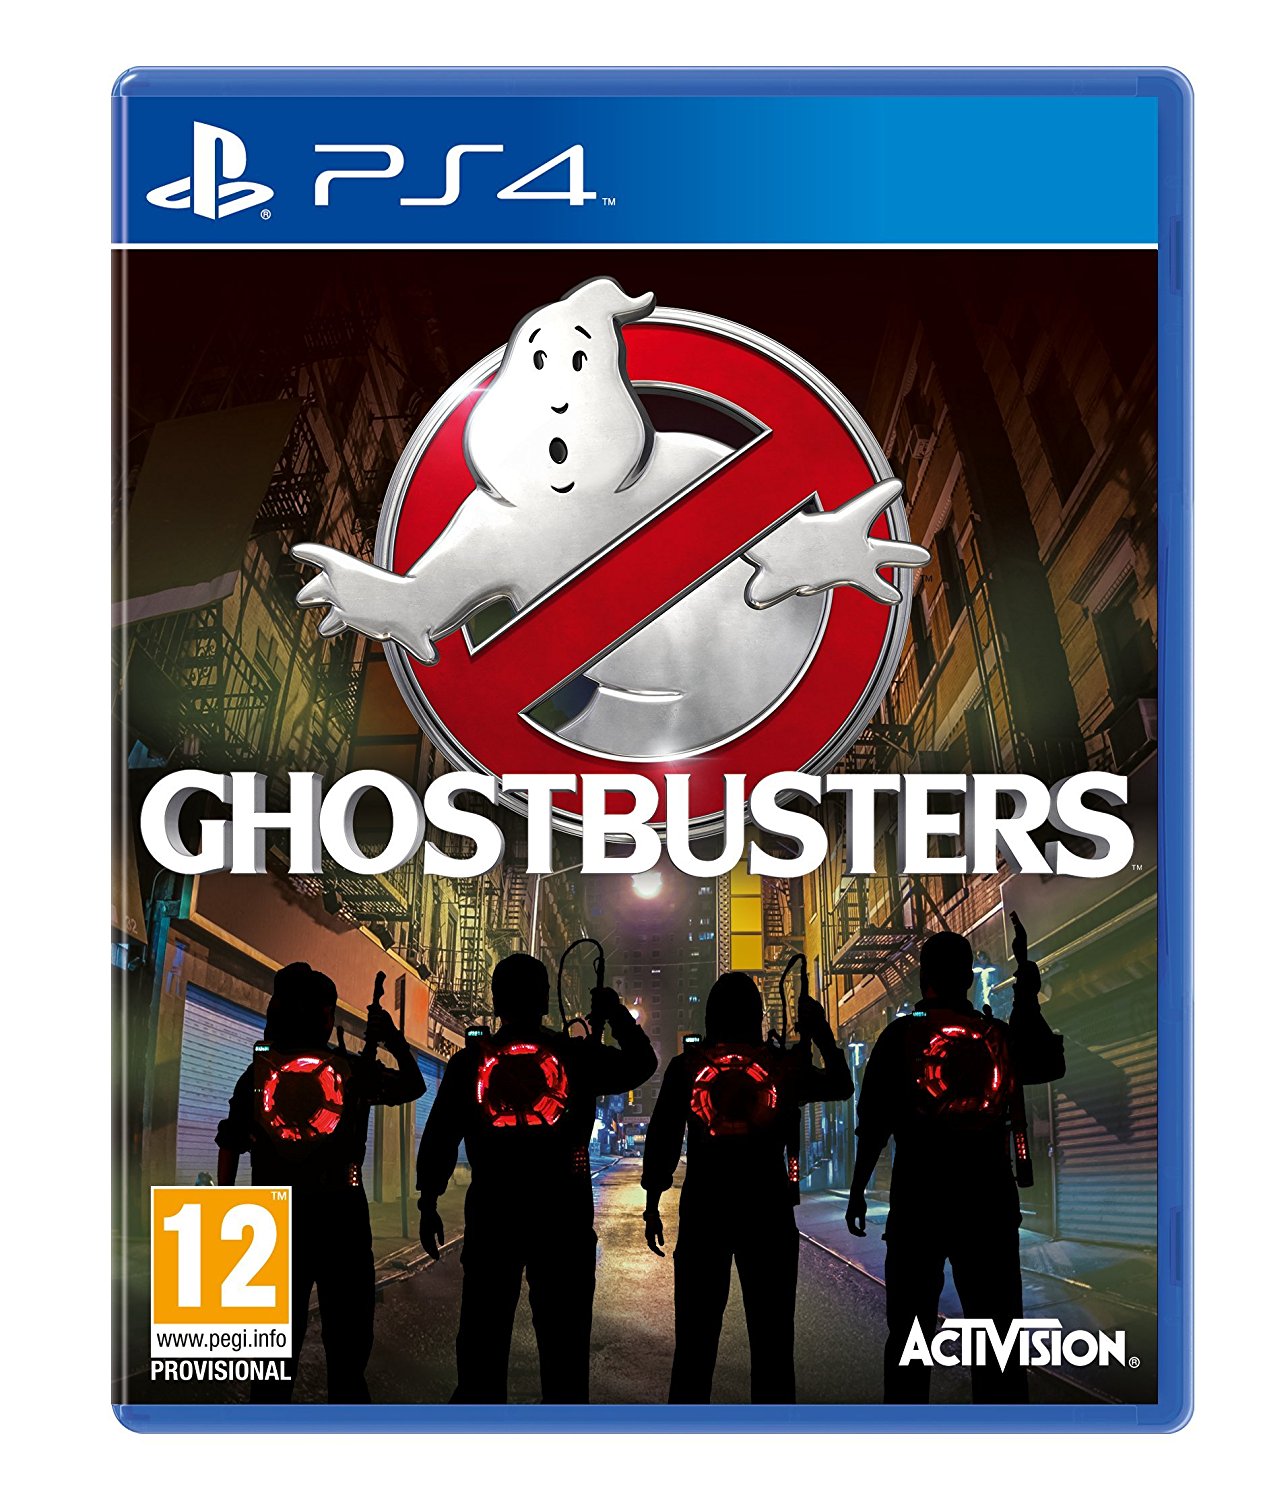 Ghostbusters - PlayStation 4 Játékok